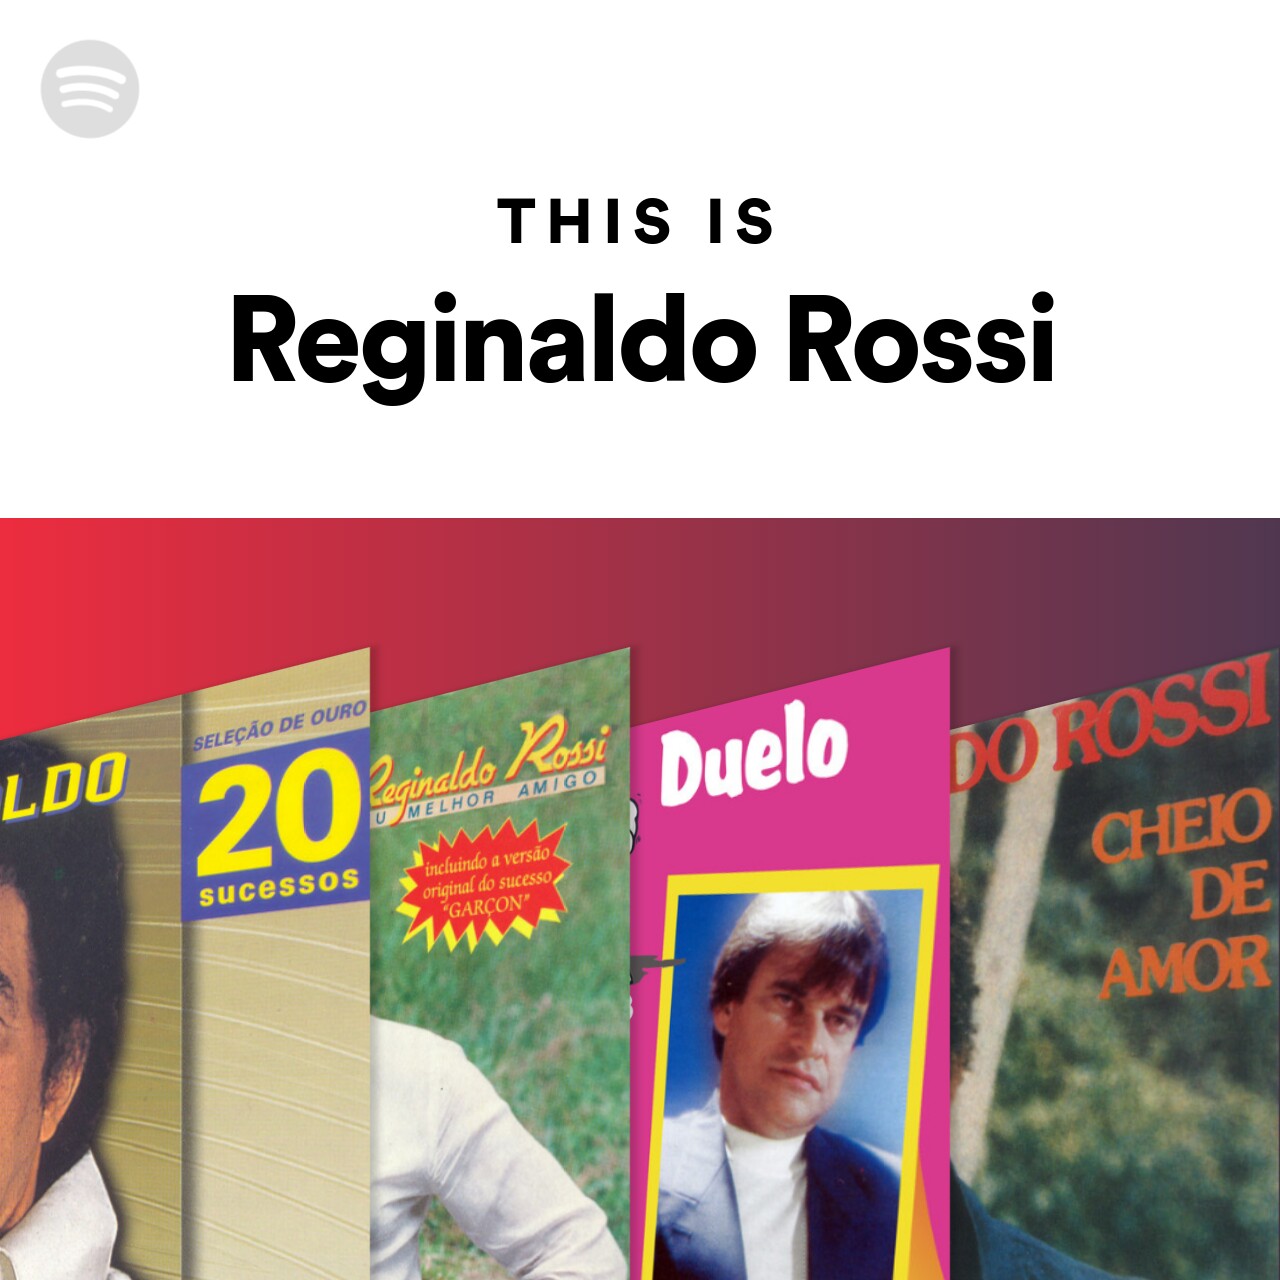 This Is Reginaldo Rossi